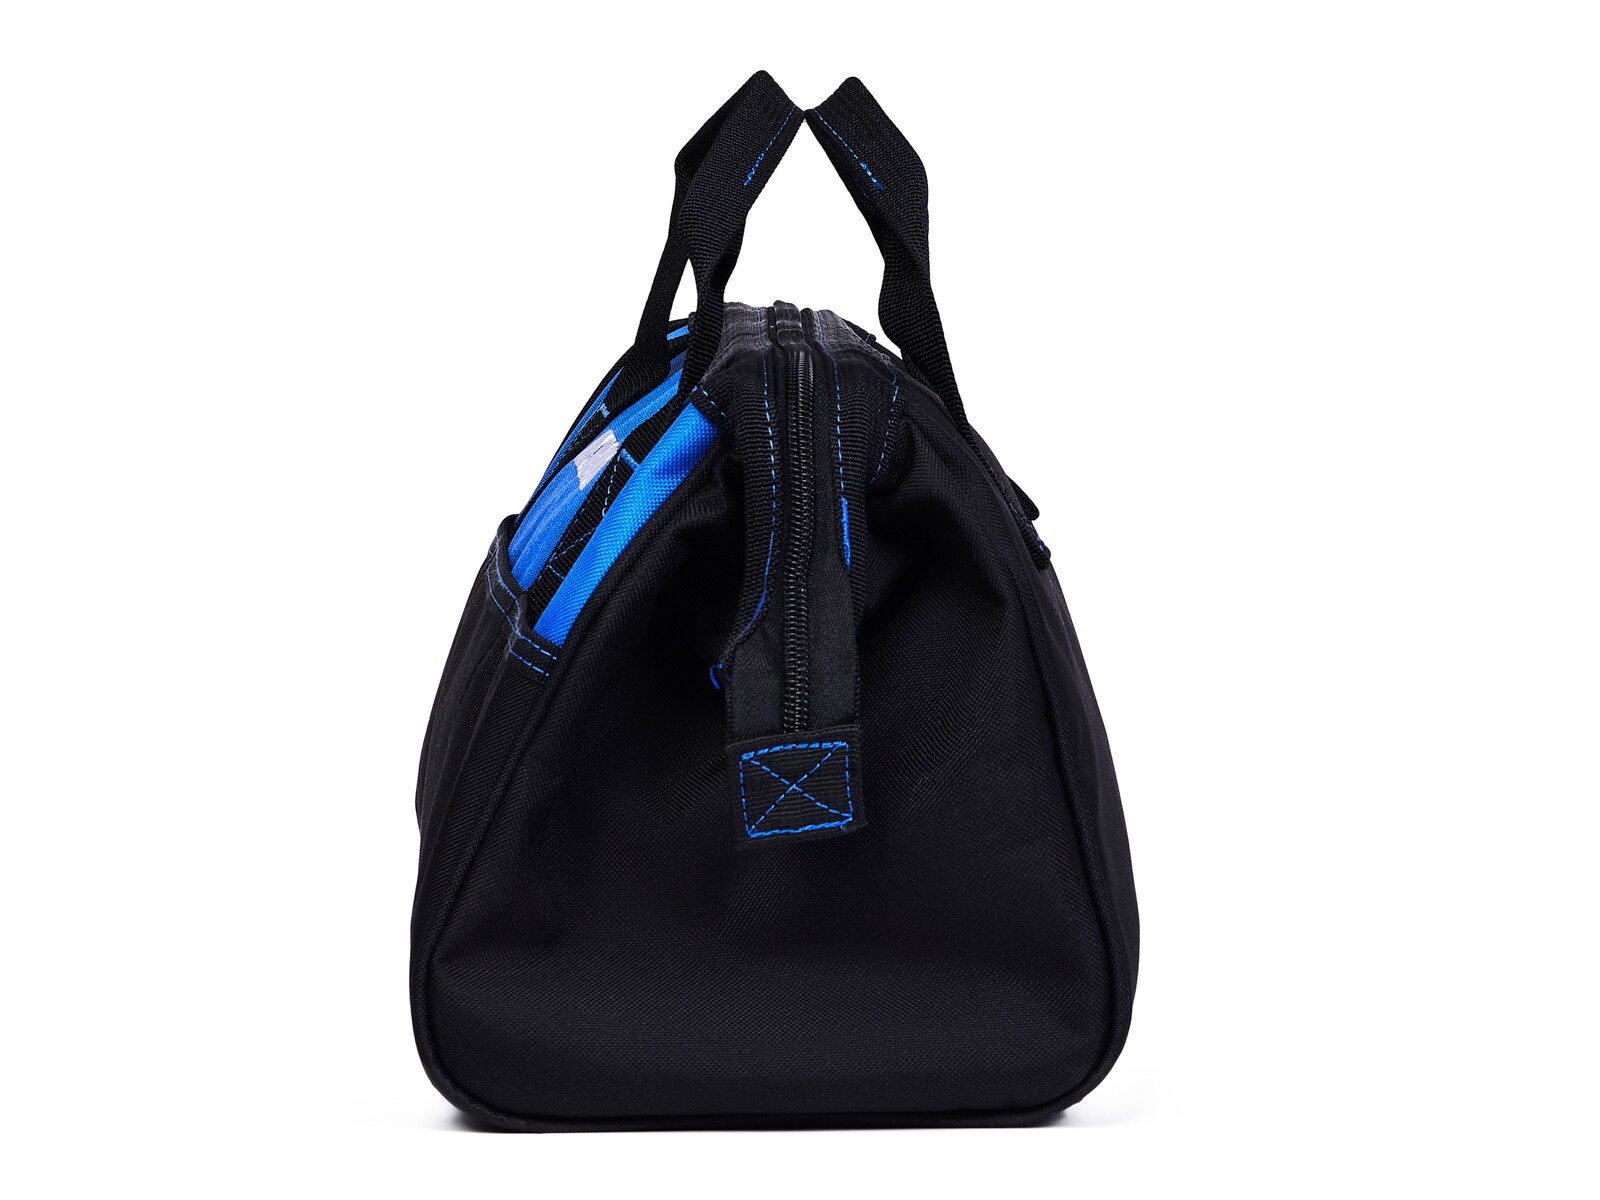 Kobalt Black/Blue Polyester 12-in Tool Bag at Lowes.com